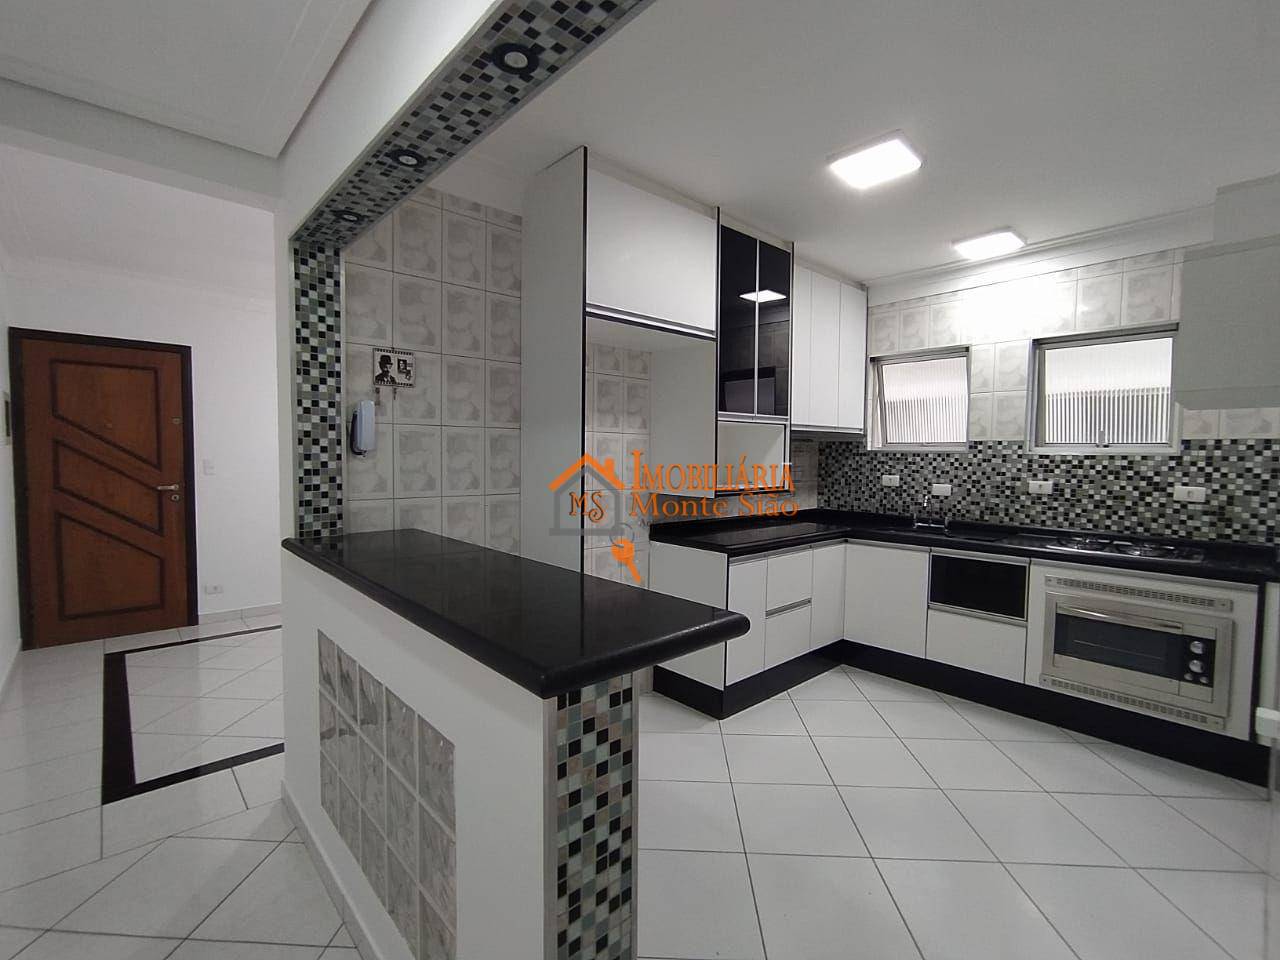 Apartamento com 2 dormitórios à venda, 75 m² por R$ 365.000,00 - Jardim Santa Mena - Guarulhos/SP